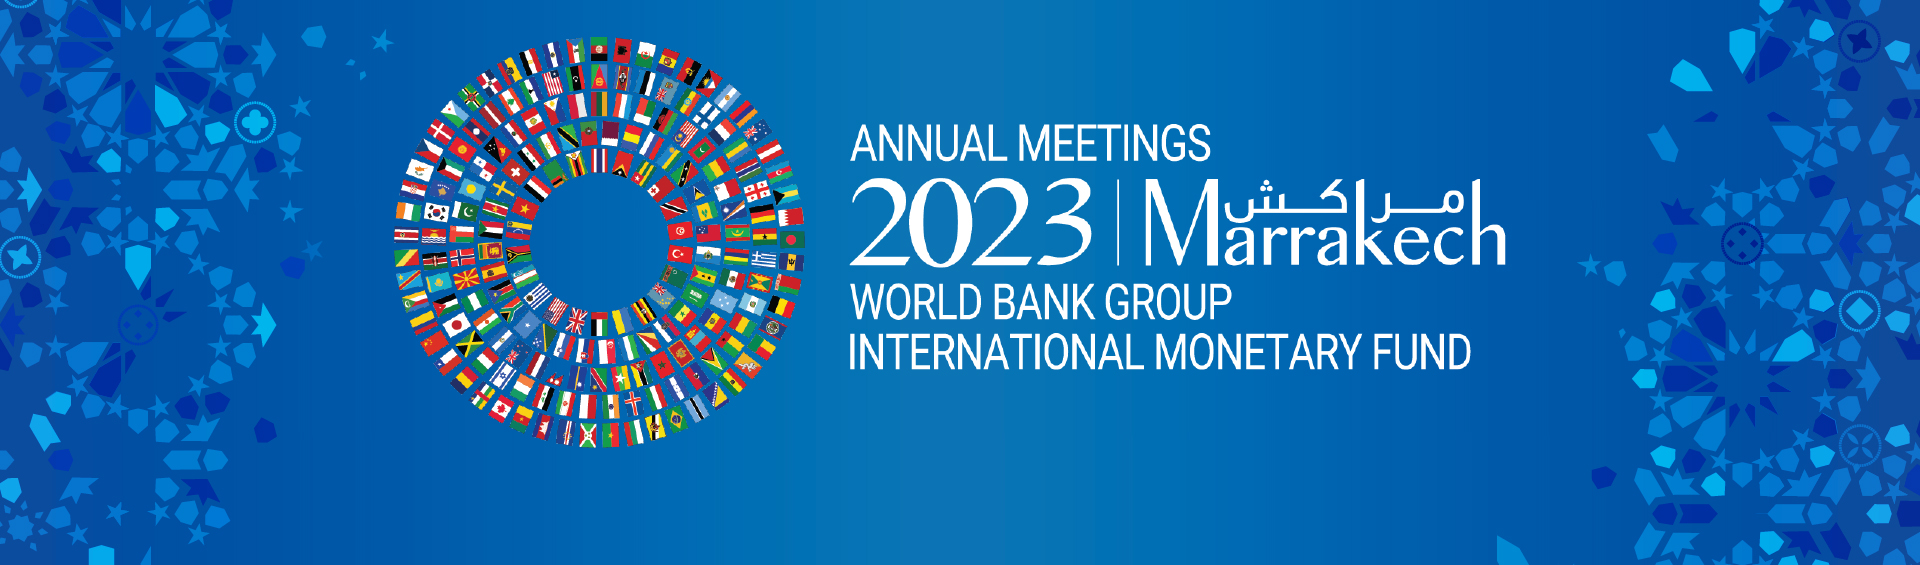 El Banco Mundial y el FMI mantienen sus Asambleas Anuales en Marrakech